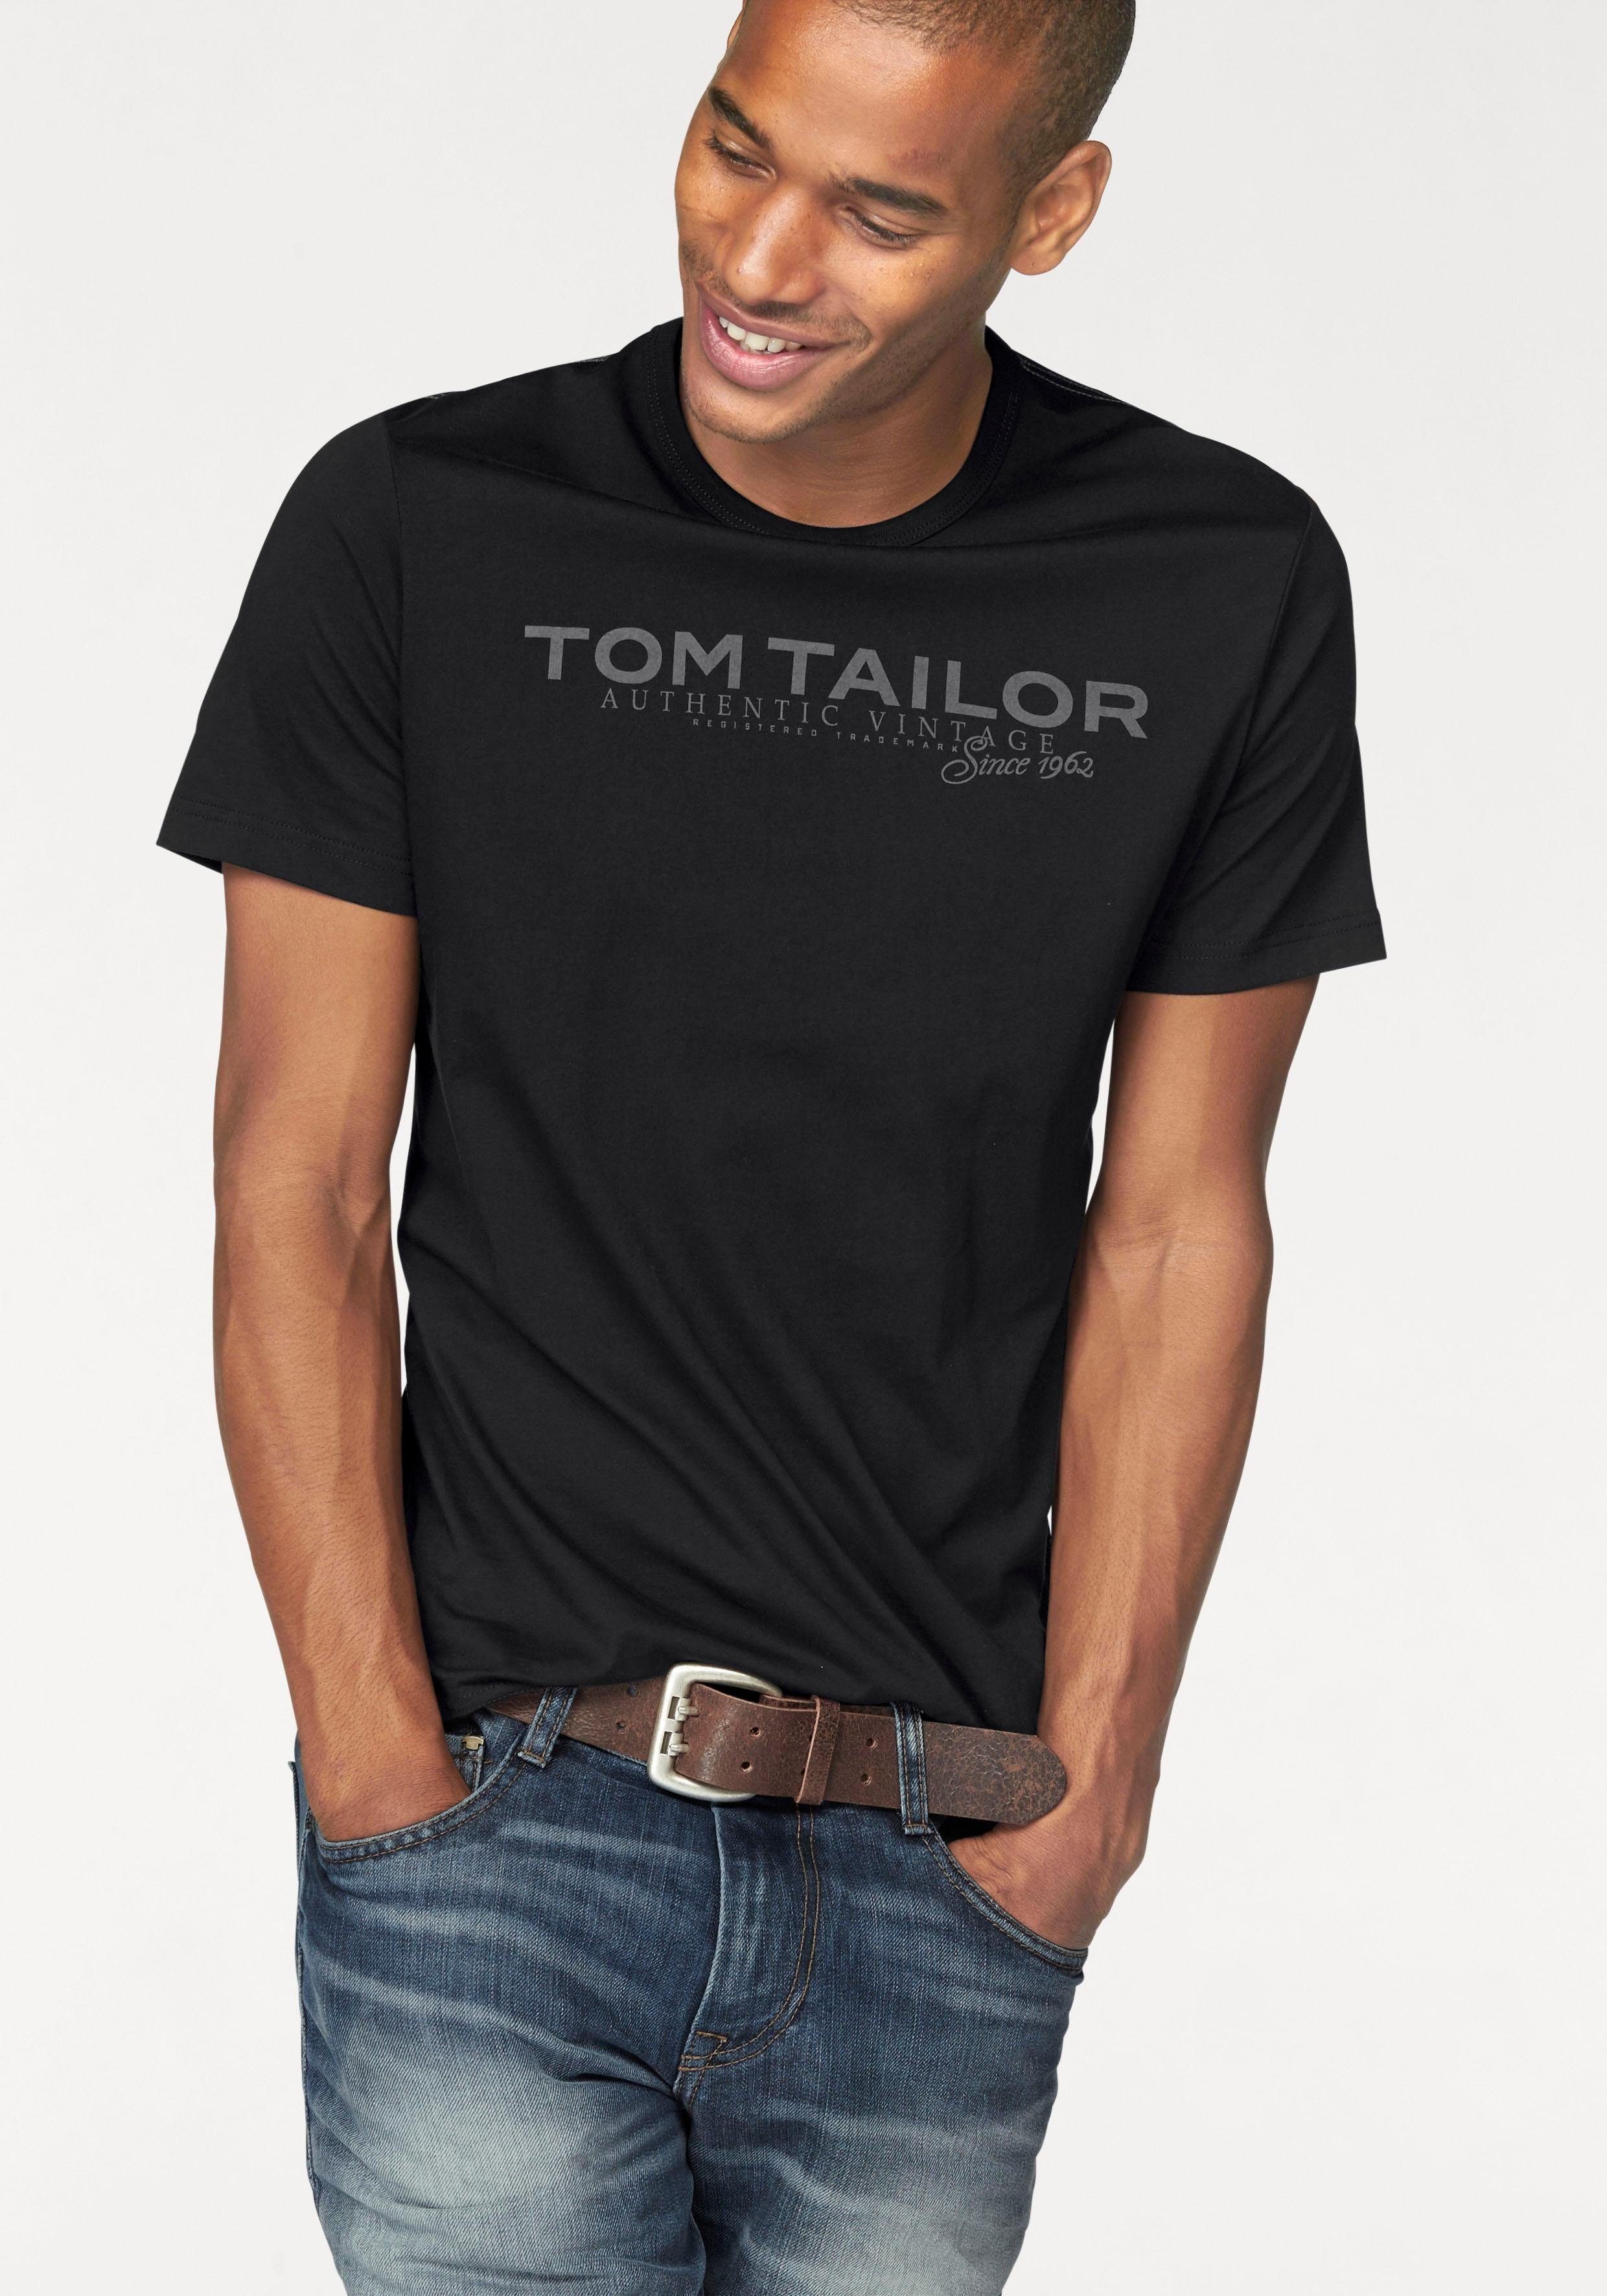 Tom Tailor Herren T-Shirts online kaufen | OTTO